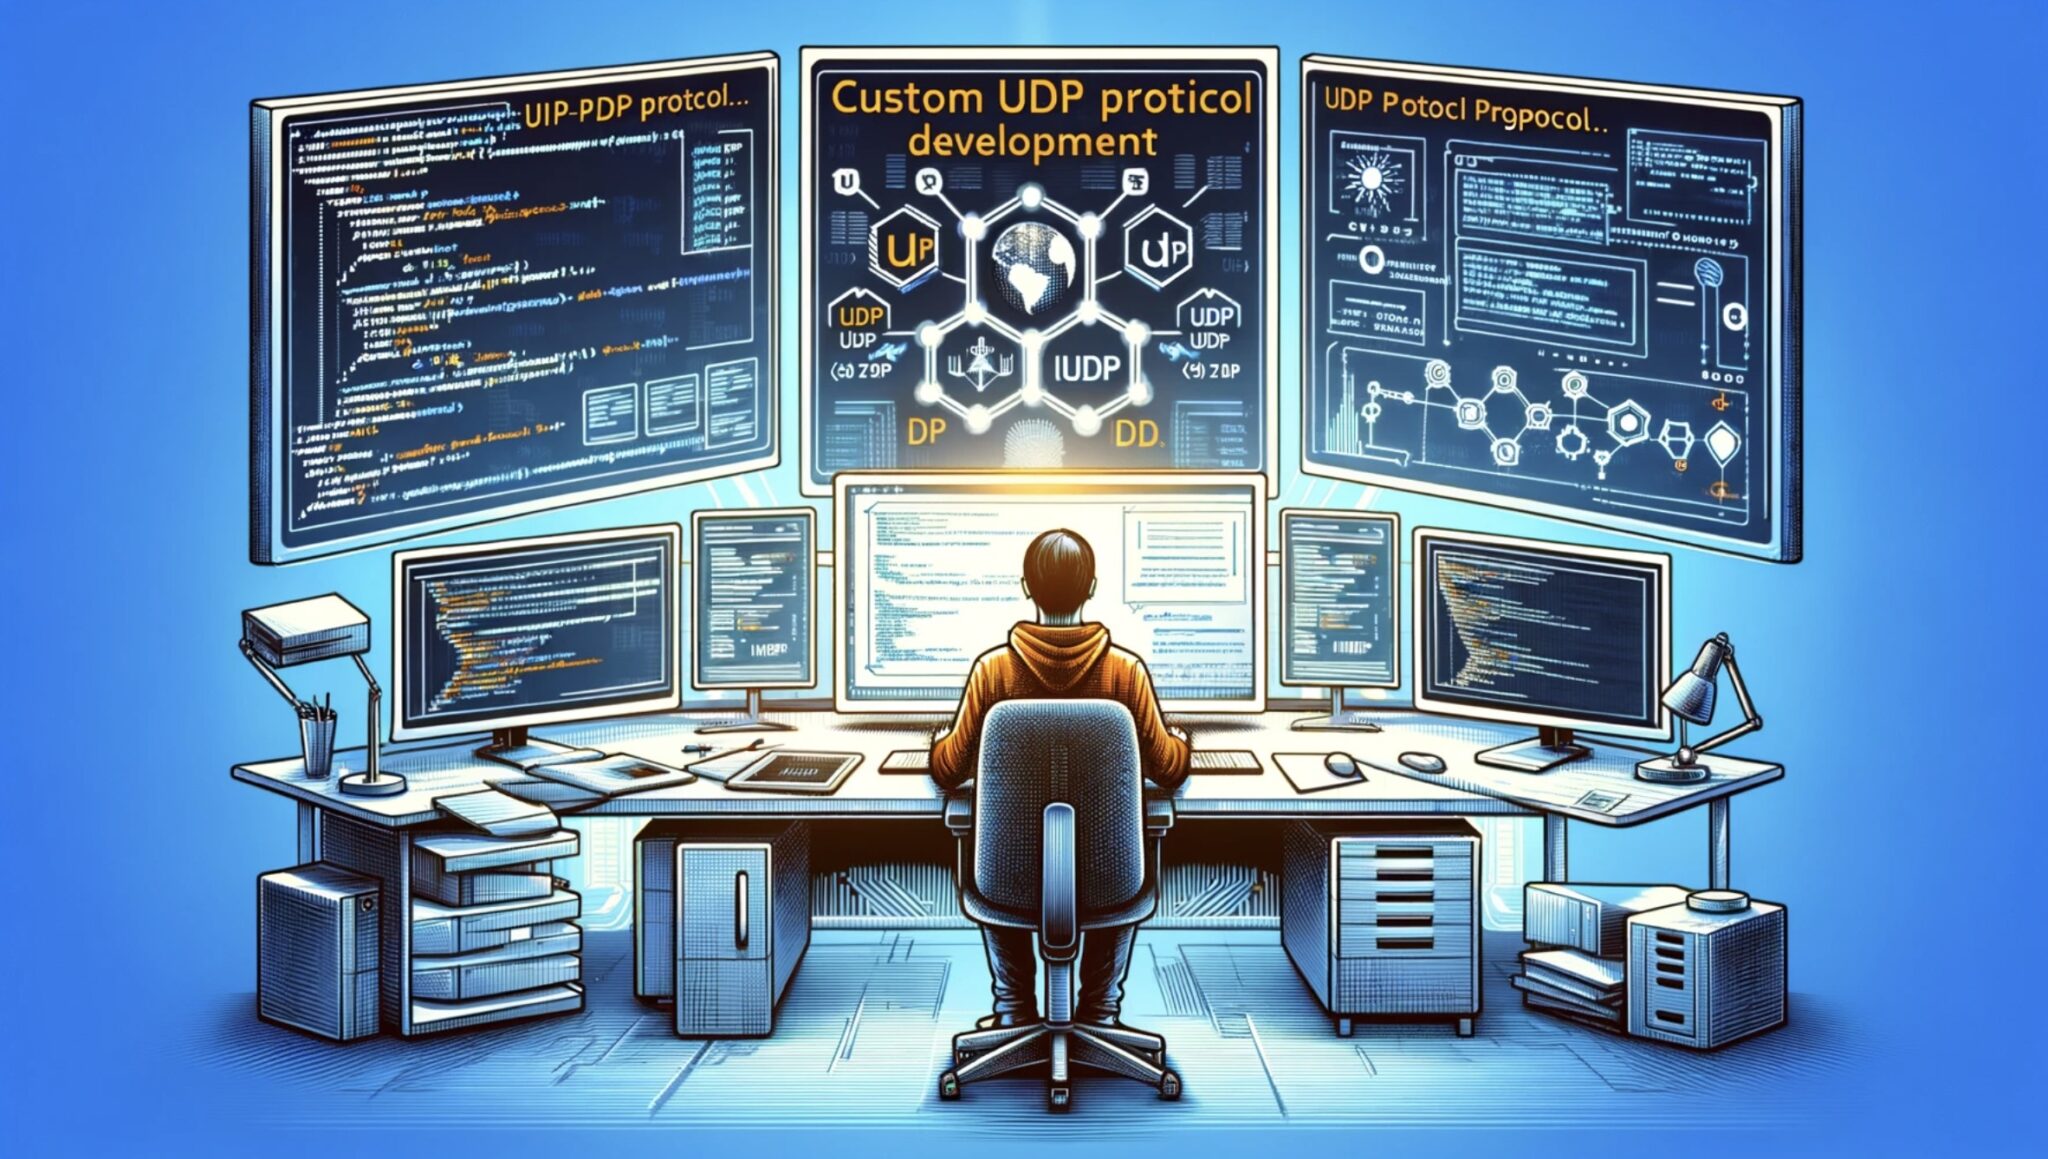 Proxy UDP: um ator-chave na eficiência da Internet